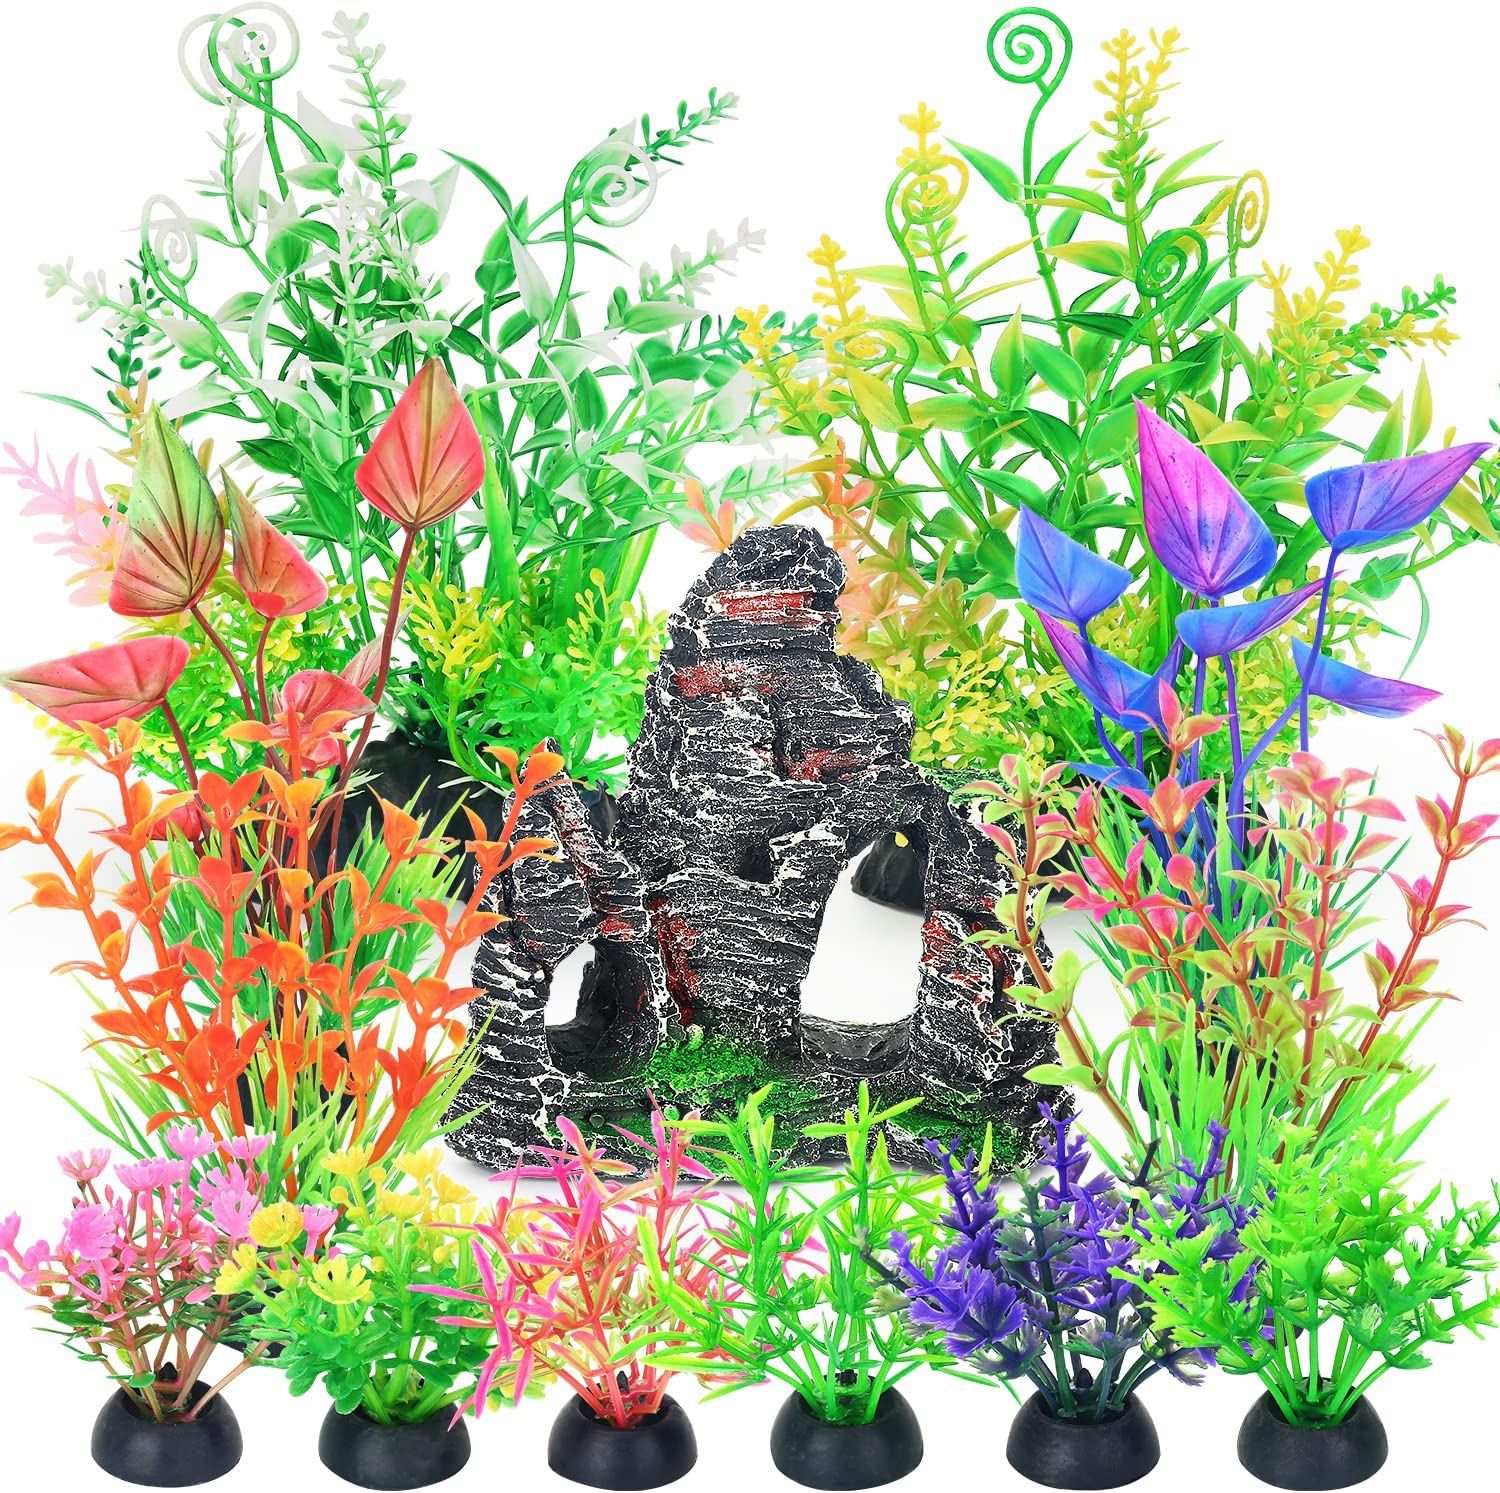 Aquarium Rockery and Fish Tank Plastic Plants Decorations Set 13 Pieces (Short)